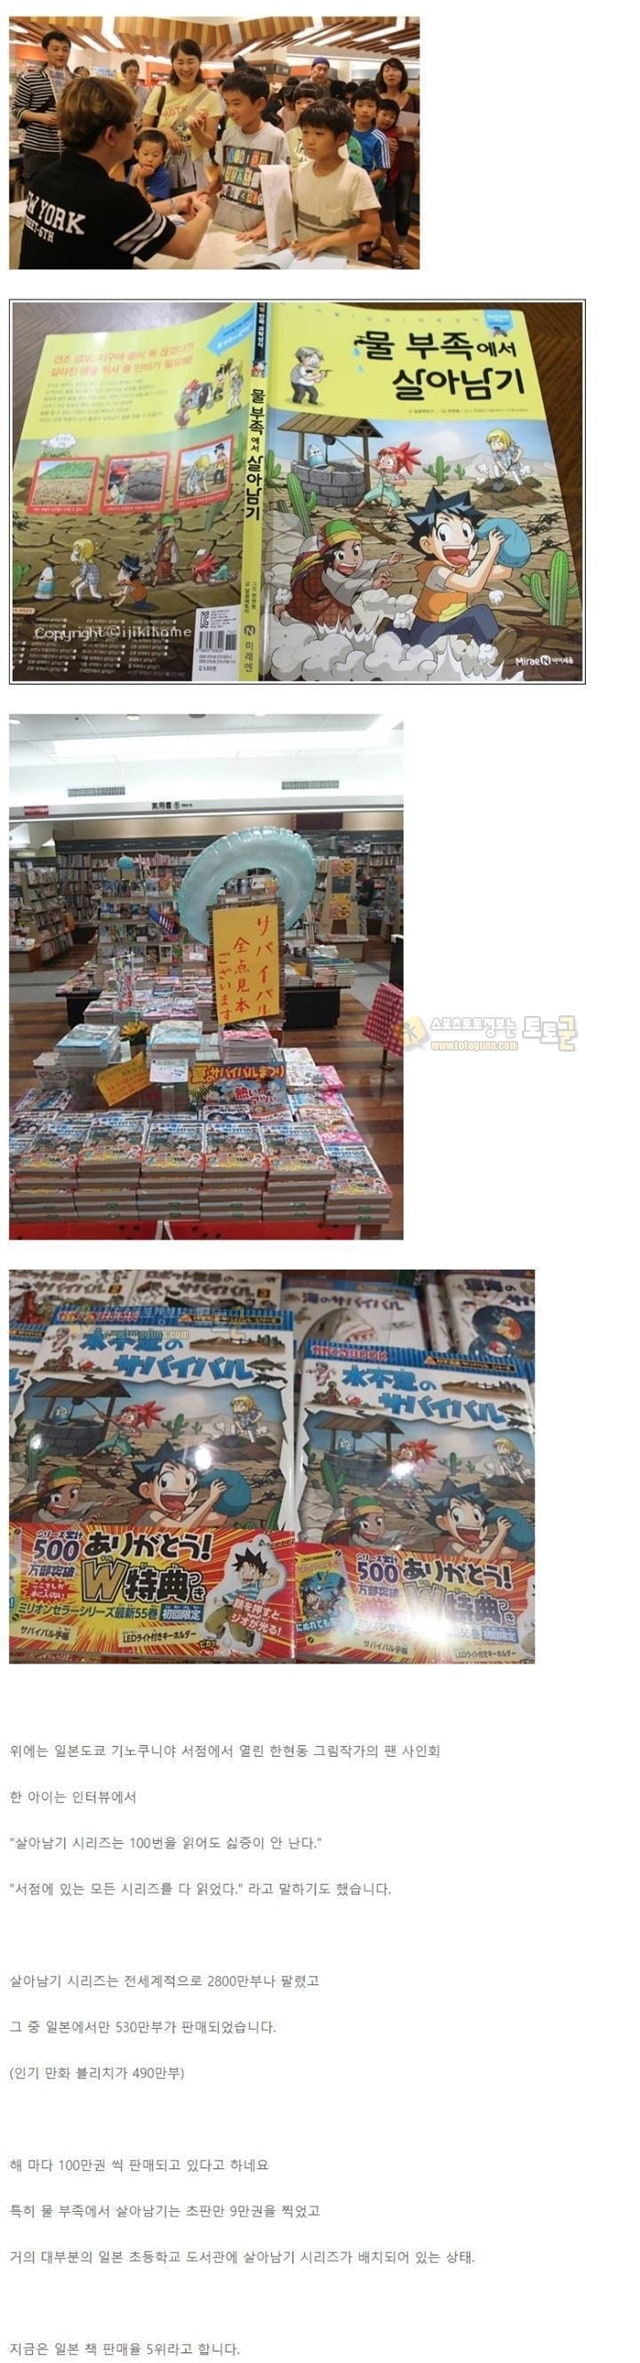 먹튀검증 토토군 유머 일본에 대박난 한국만화